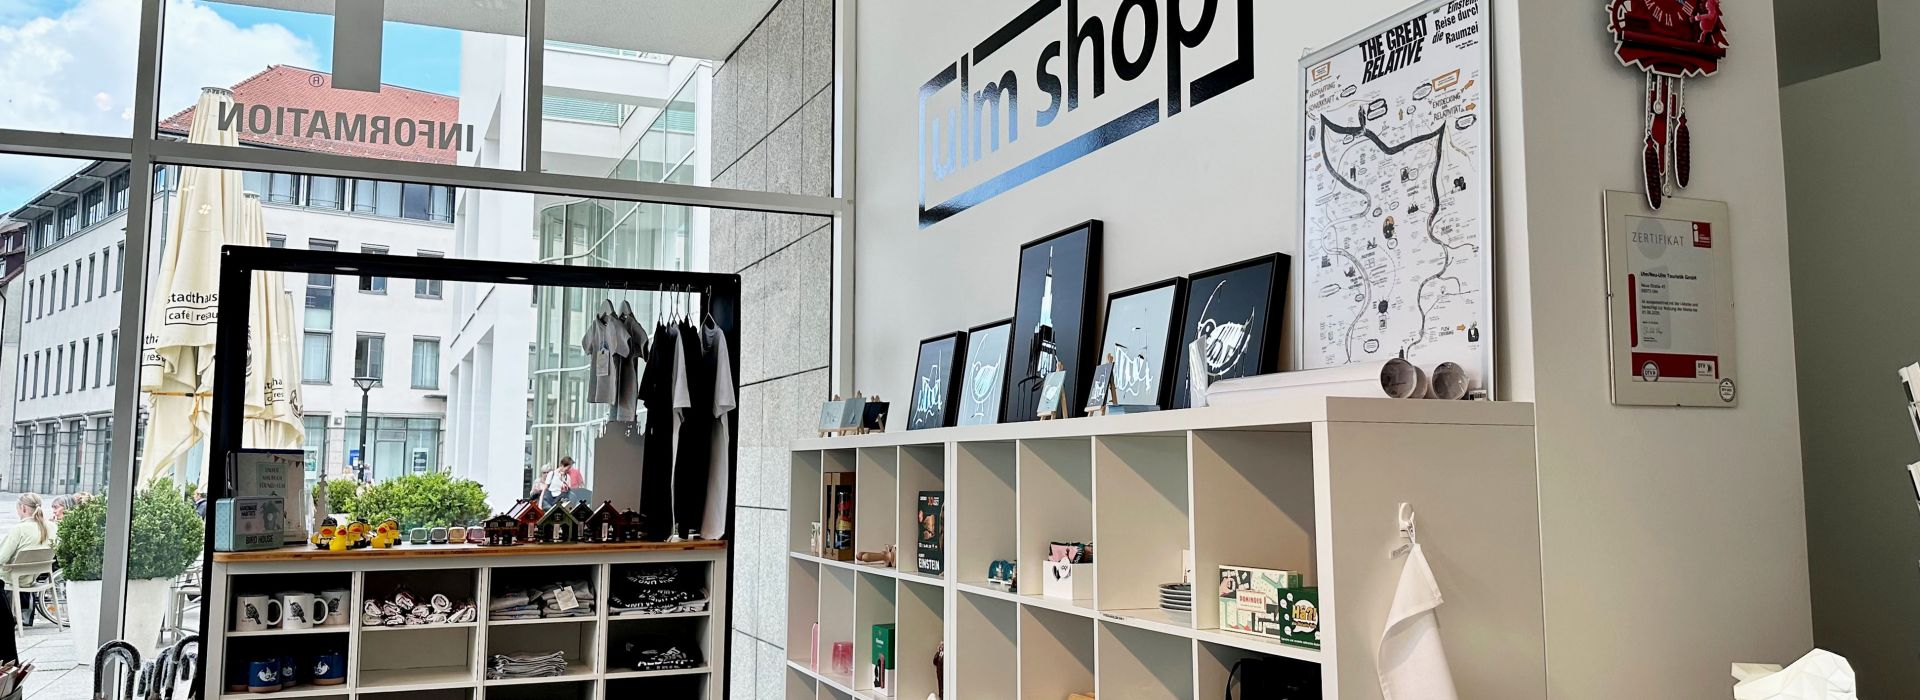 Ulm-Shop